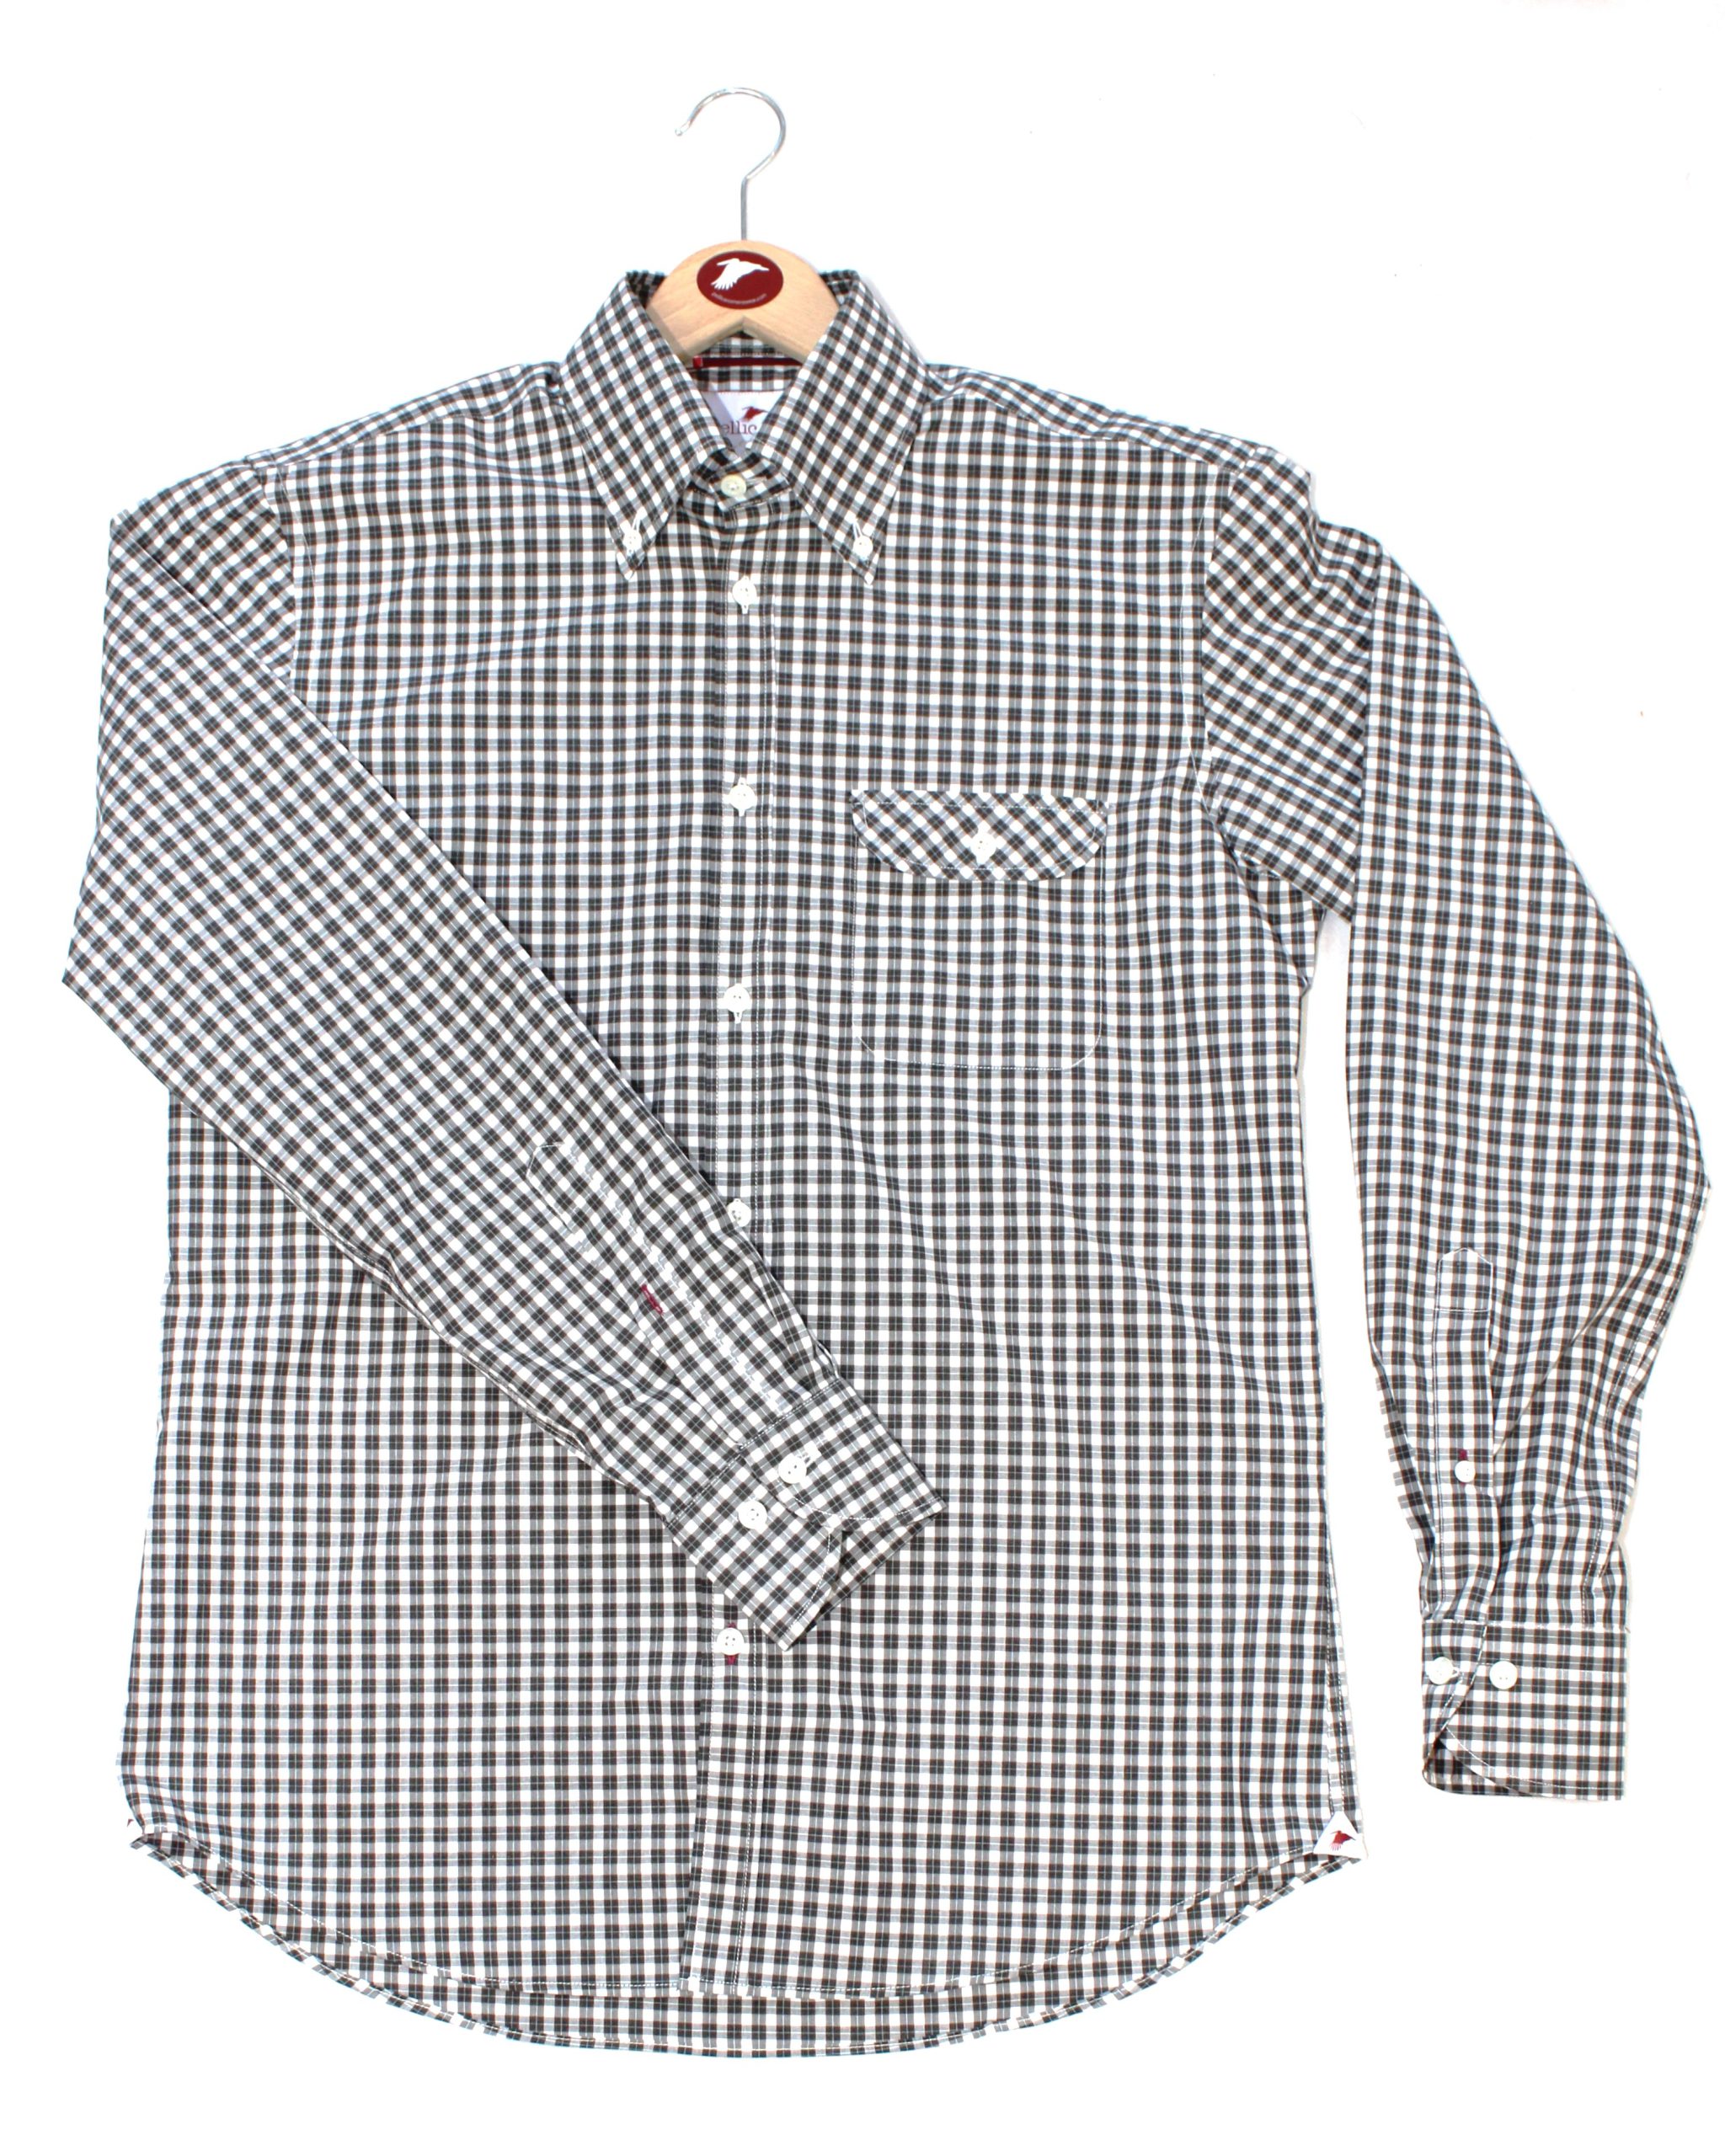 A Men's Cotton Poplin Multi-Colour Check Shirt - Pellicano Menswear